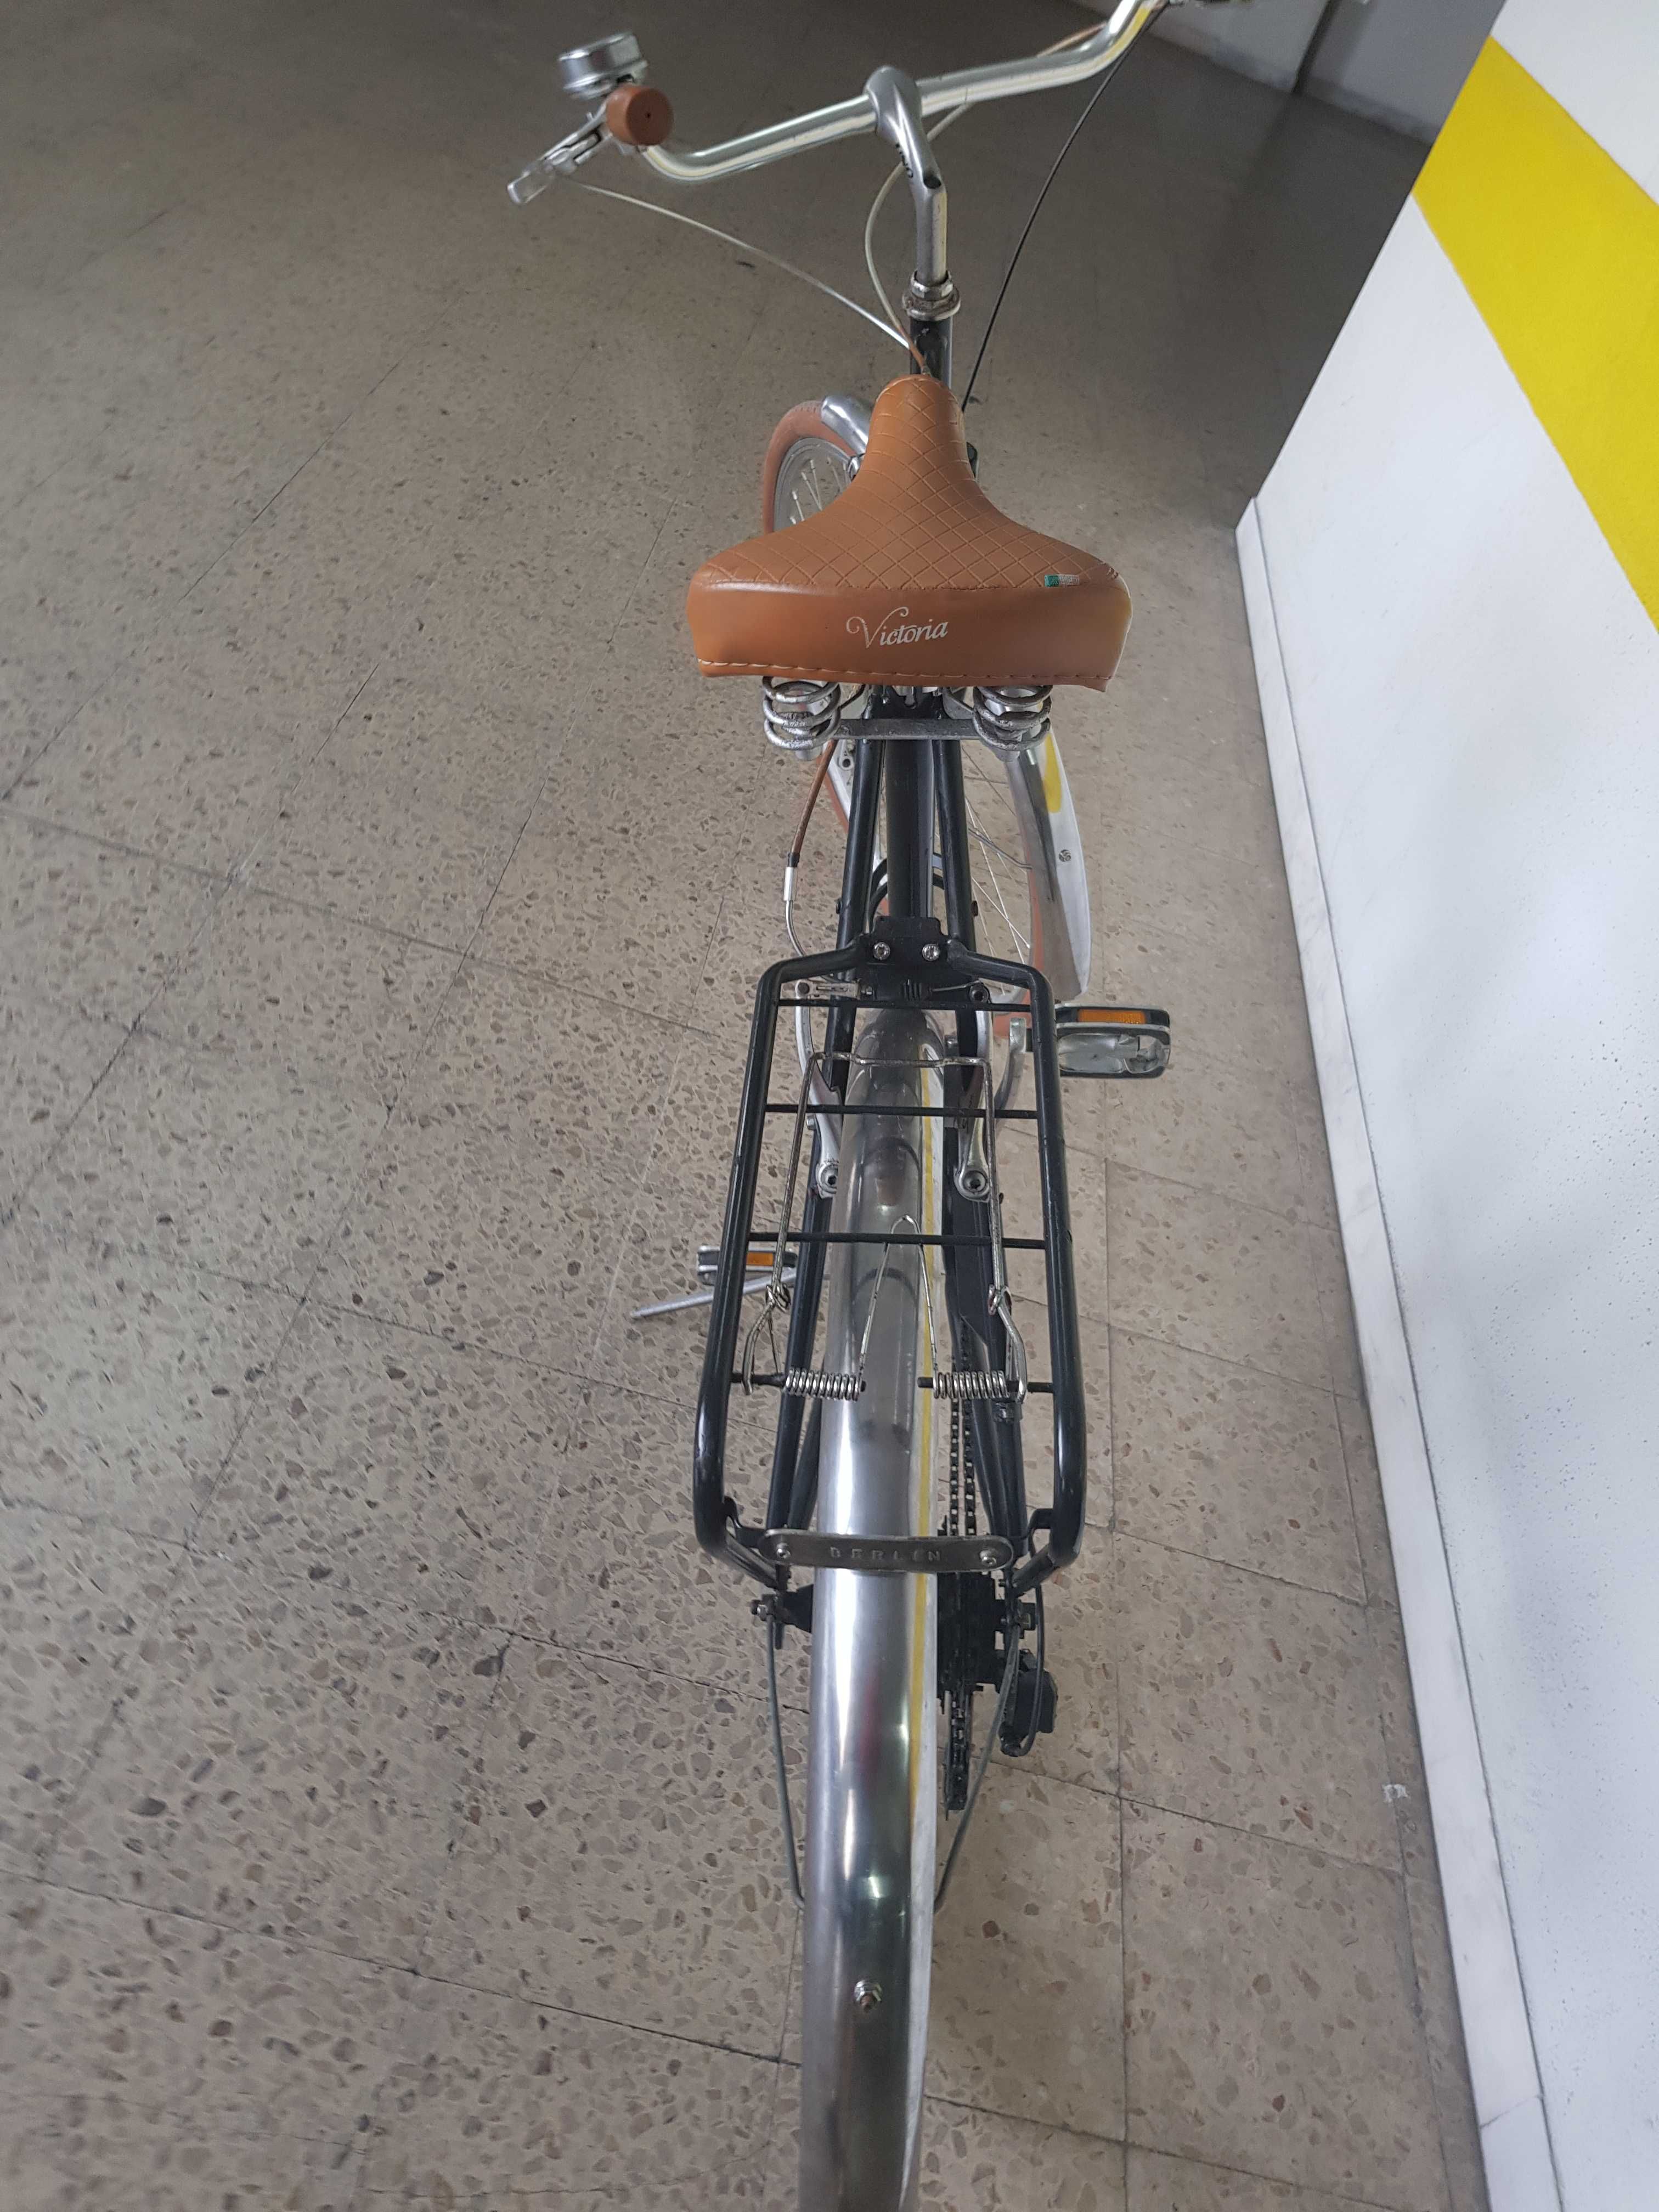 Bicicleta pasteleira italiana (tamanho do quadro: 58 cm.
)